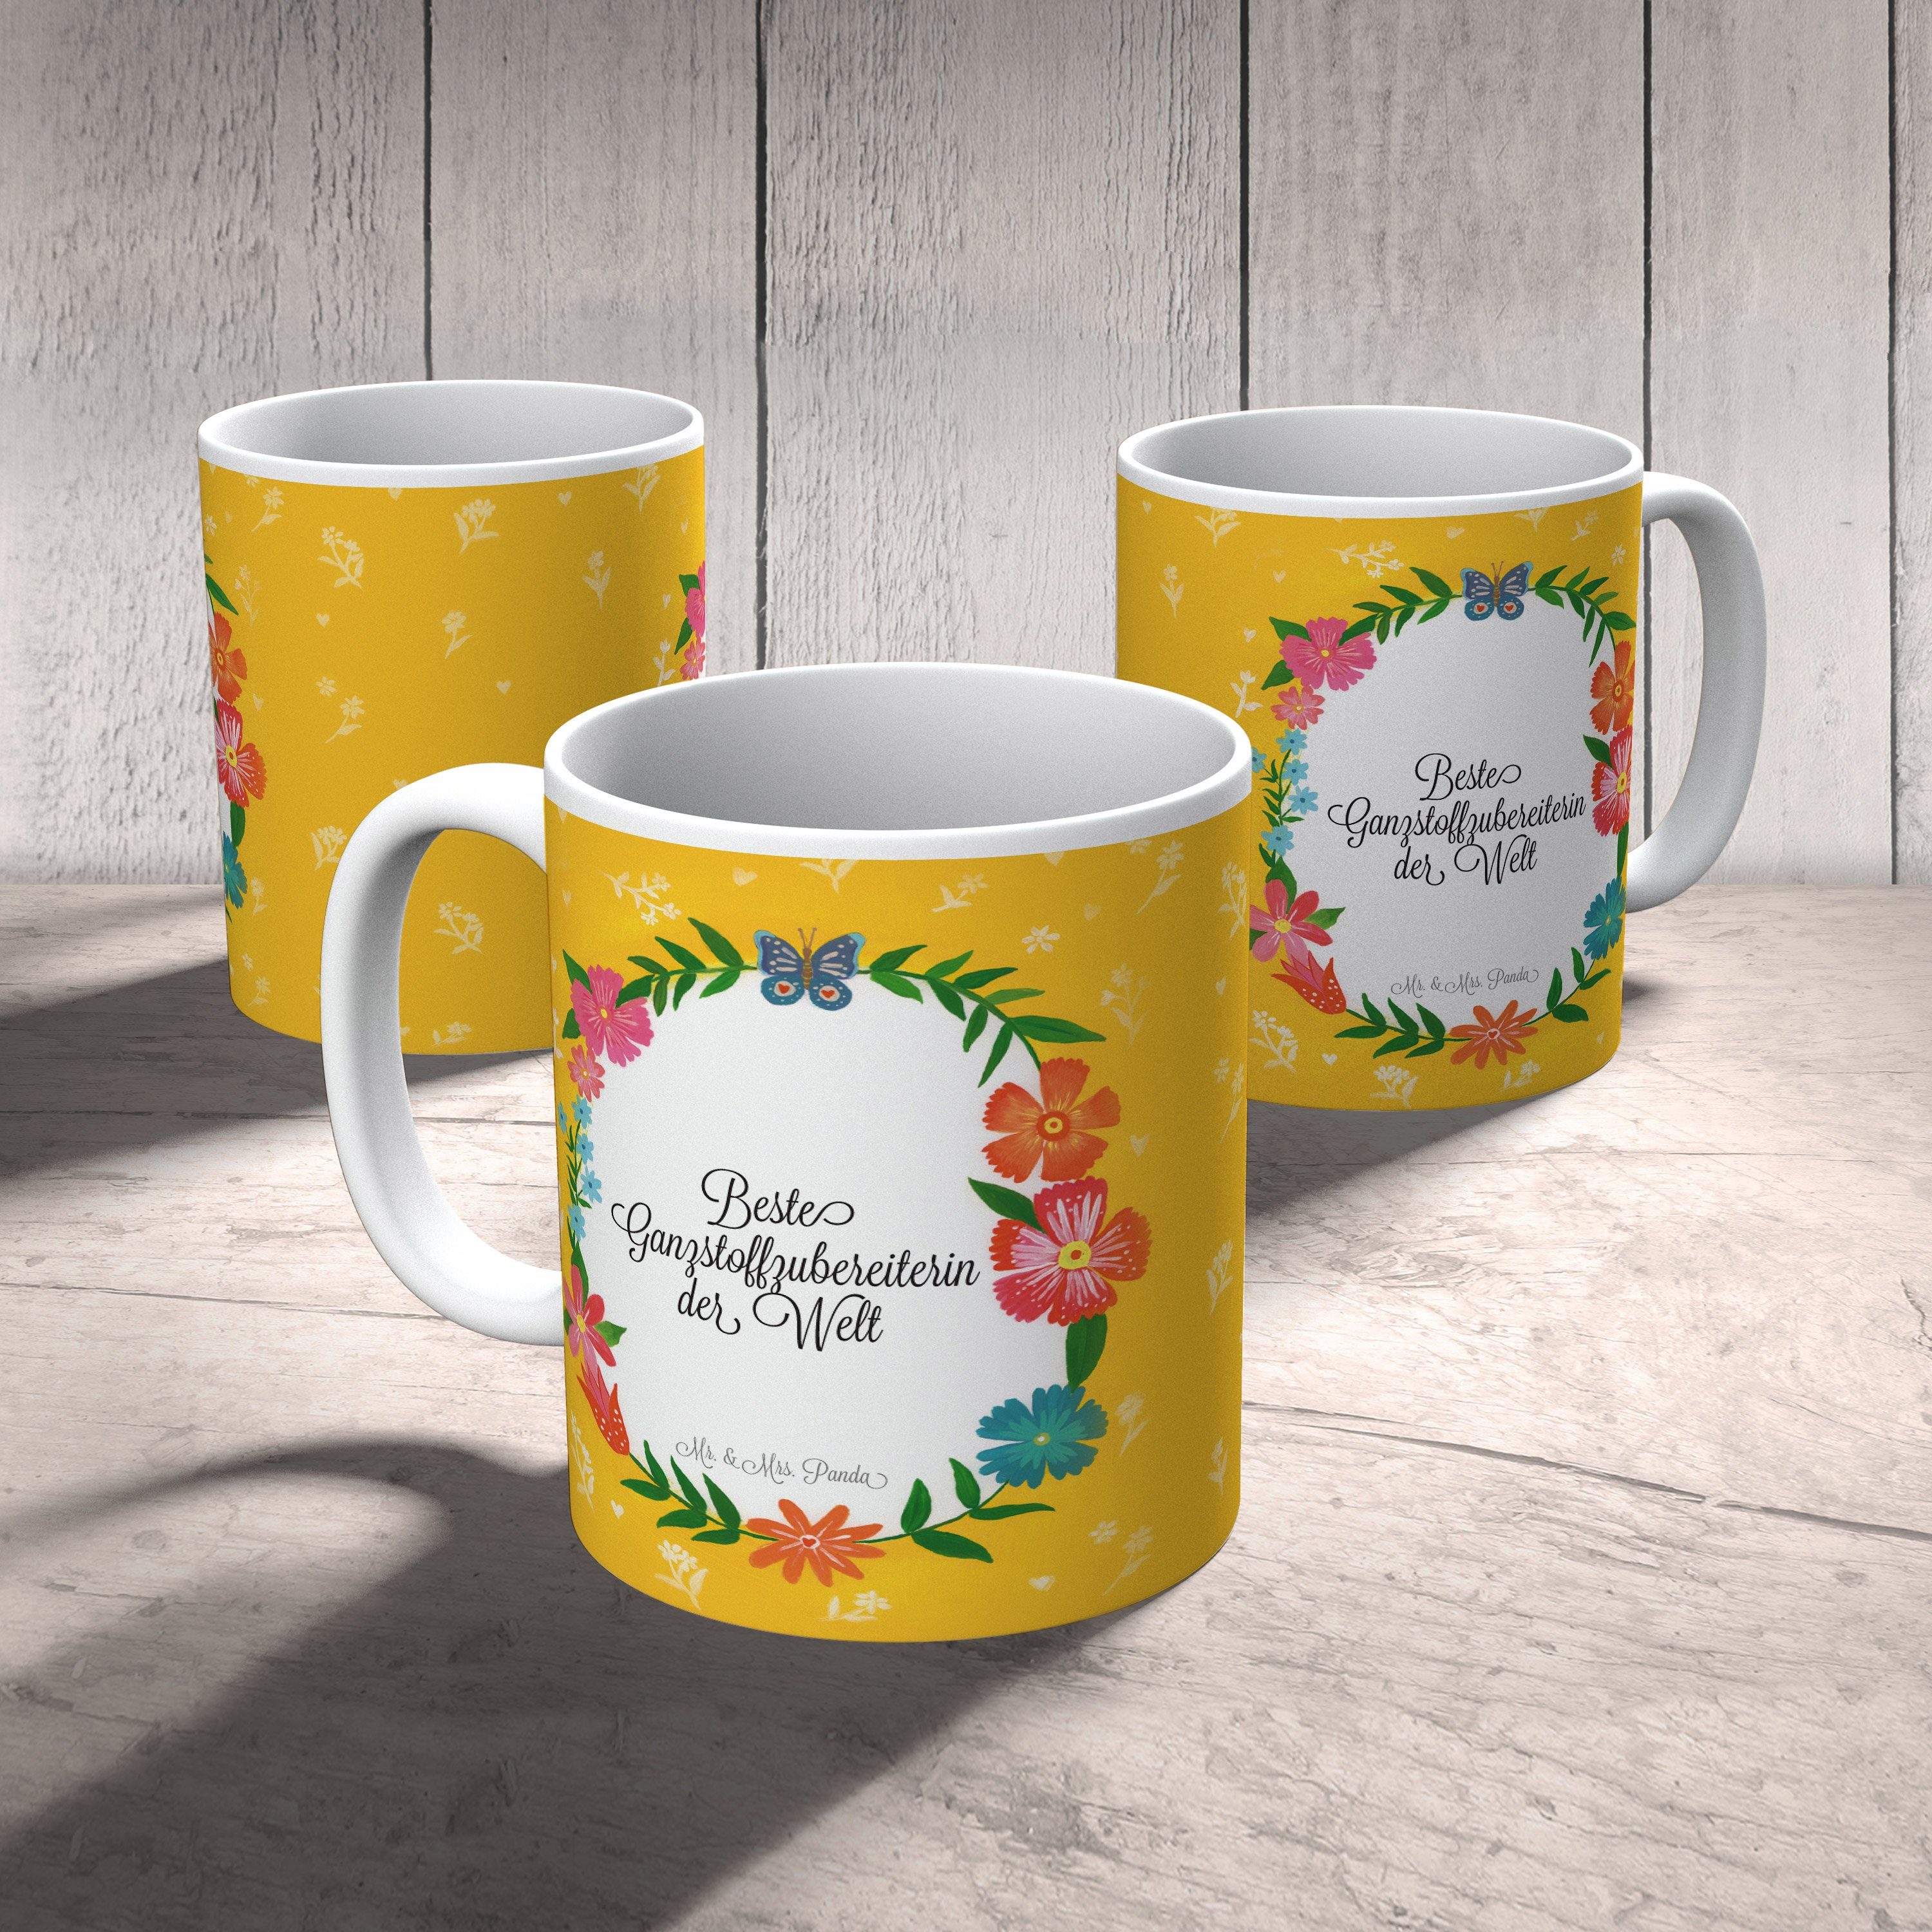 Mr. & Mrs. Panda Tasse Keramik Kaffeetass, Ausbildung, Ganzstoffzubereiterin - Geschenk, Gratulation